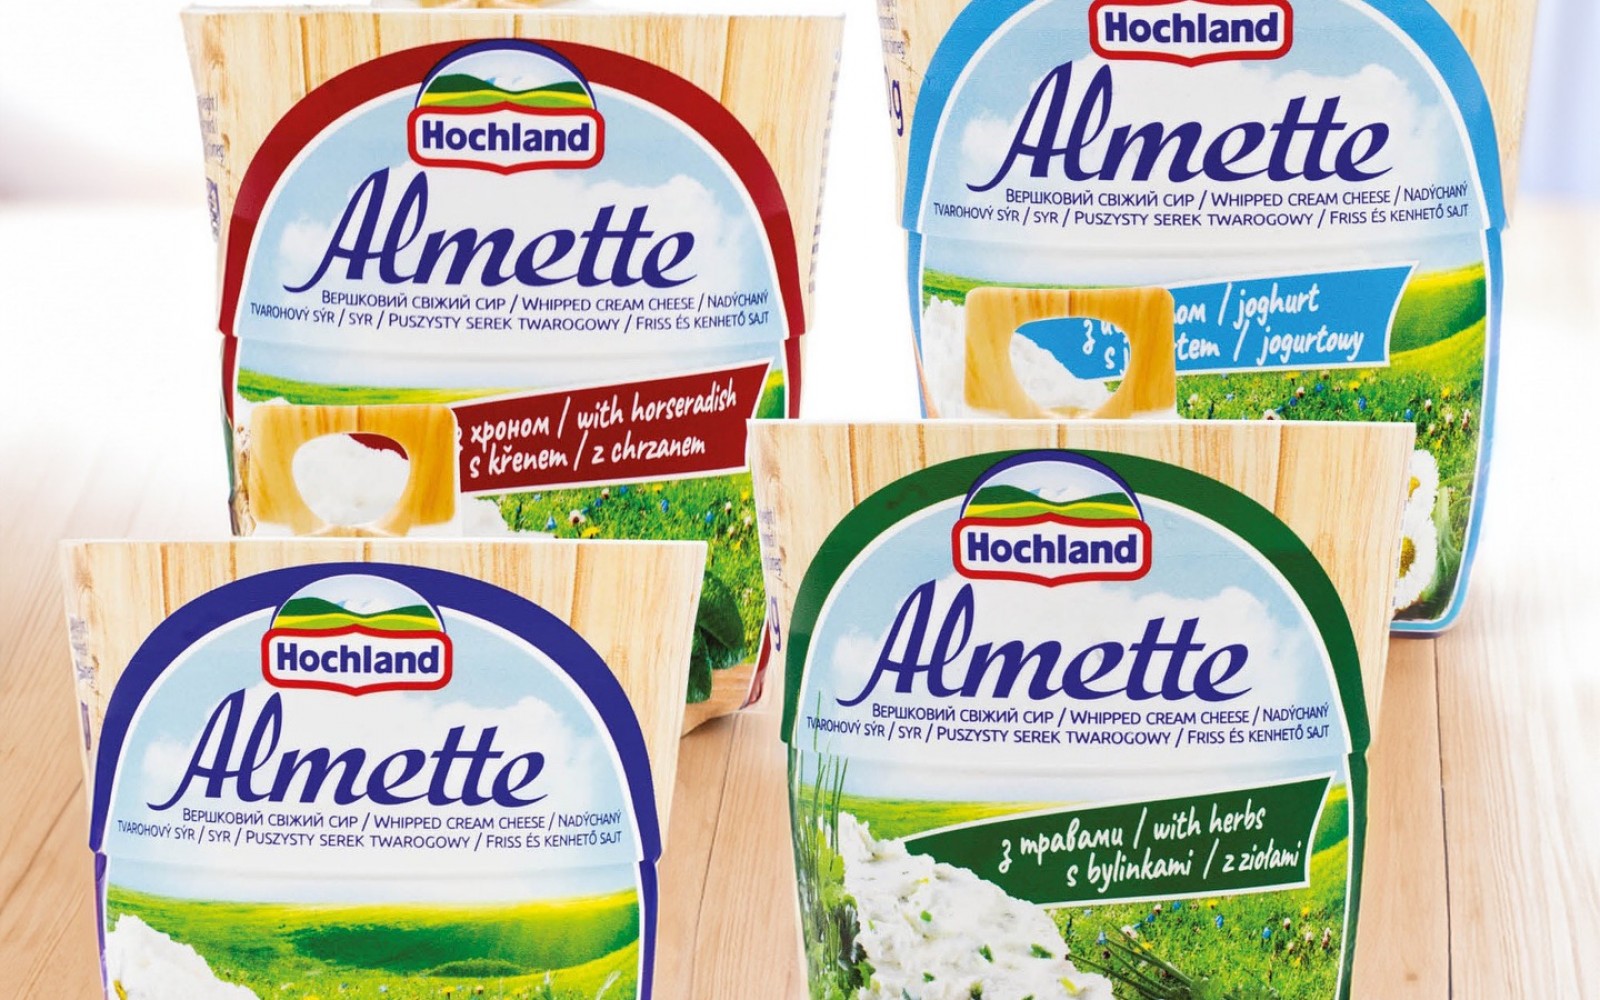 Az Almette krémsajtok kiváló minőségű, friss és ízletes termékek, melyek sokoldalúan felhasználhatóak